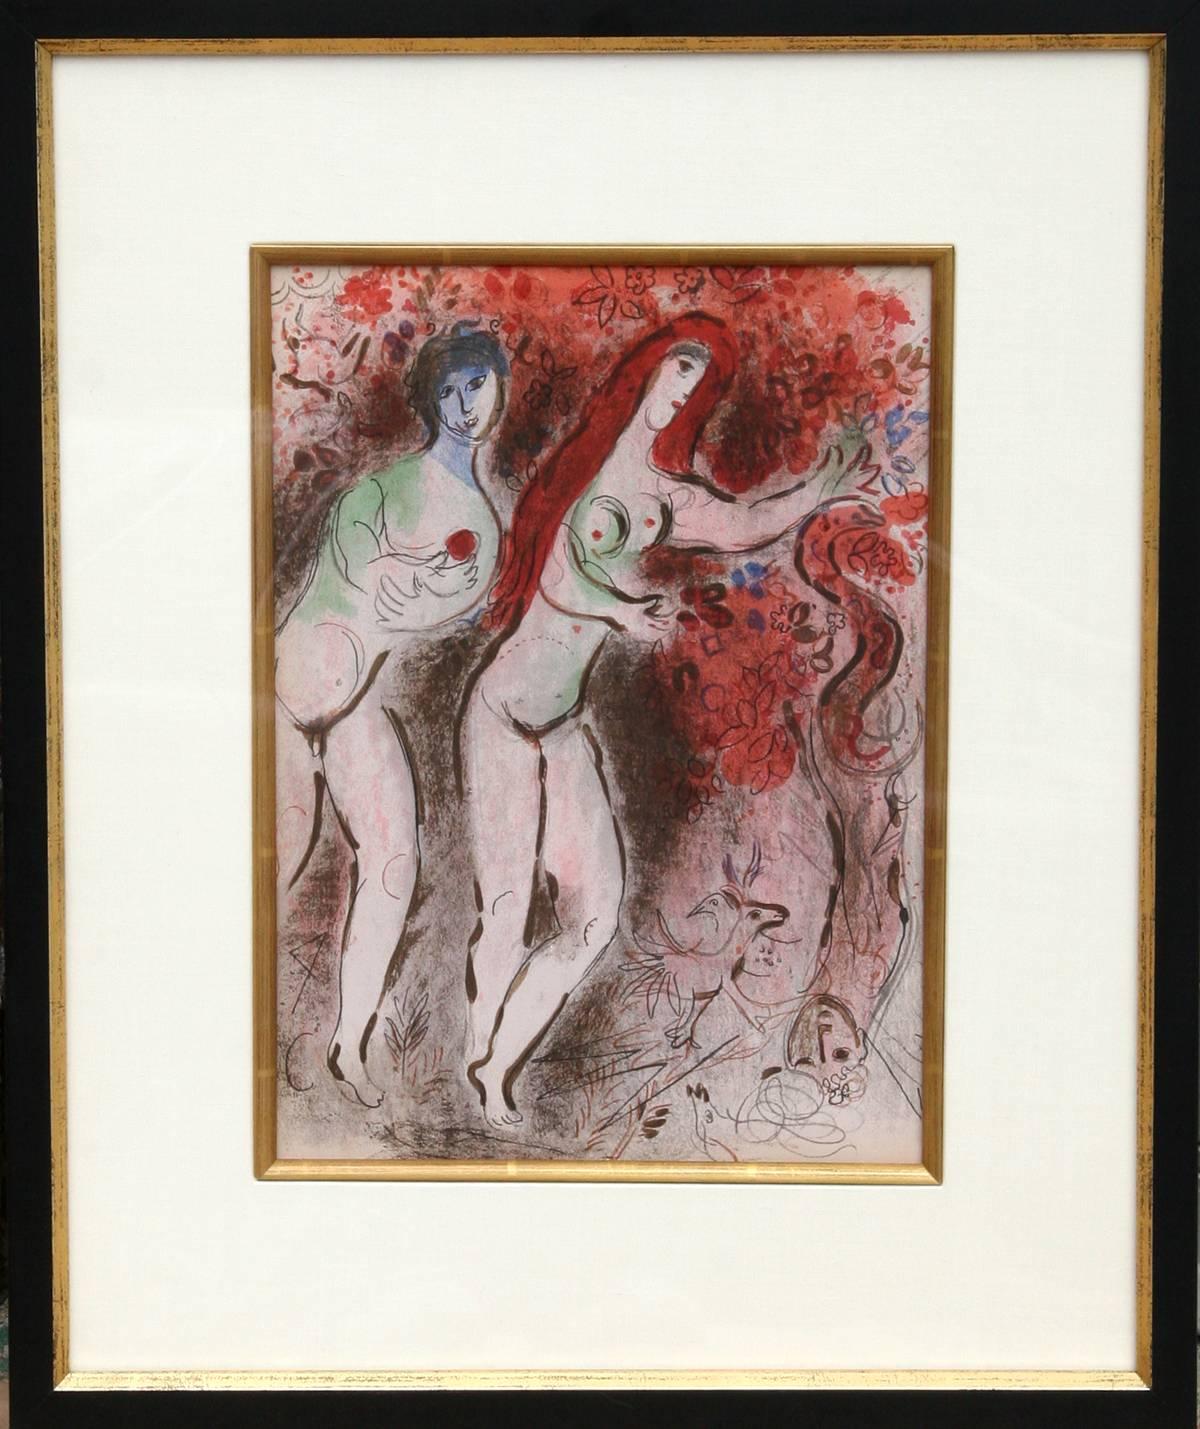 Artistics : Marc Chagall, Russe (1887 - 1985)
Titre : Adams et Eve et le fruit défendu tiré de "Dessins pour la Bible"
Année : 1960
Médium : Lithographie 
Taille de l'édition : 6500 
Dimensions : 35,56 cm x 26,67 cm (14 in. x 10.5 in.)
Taille du